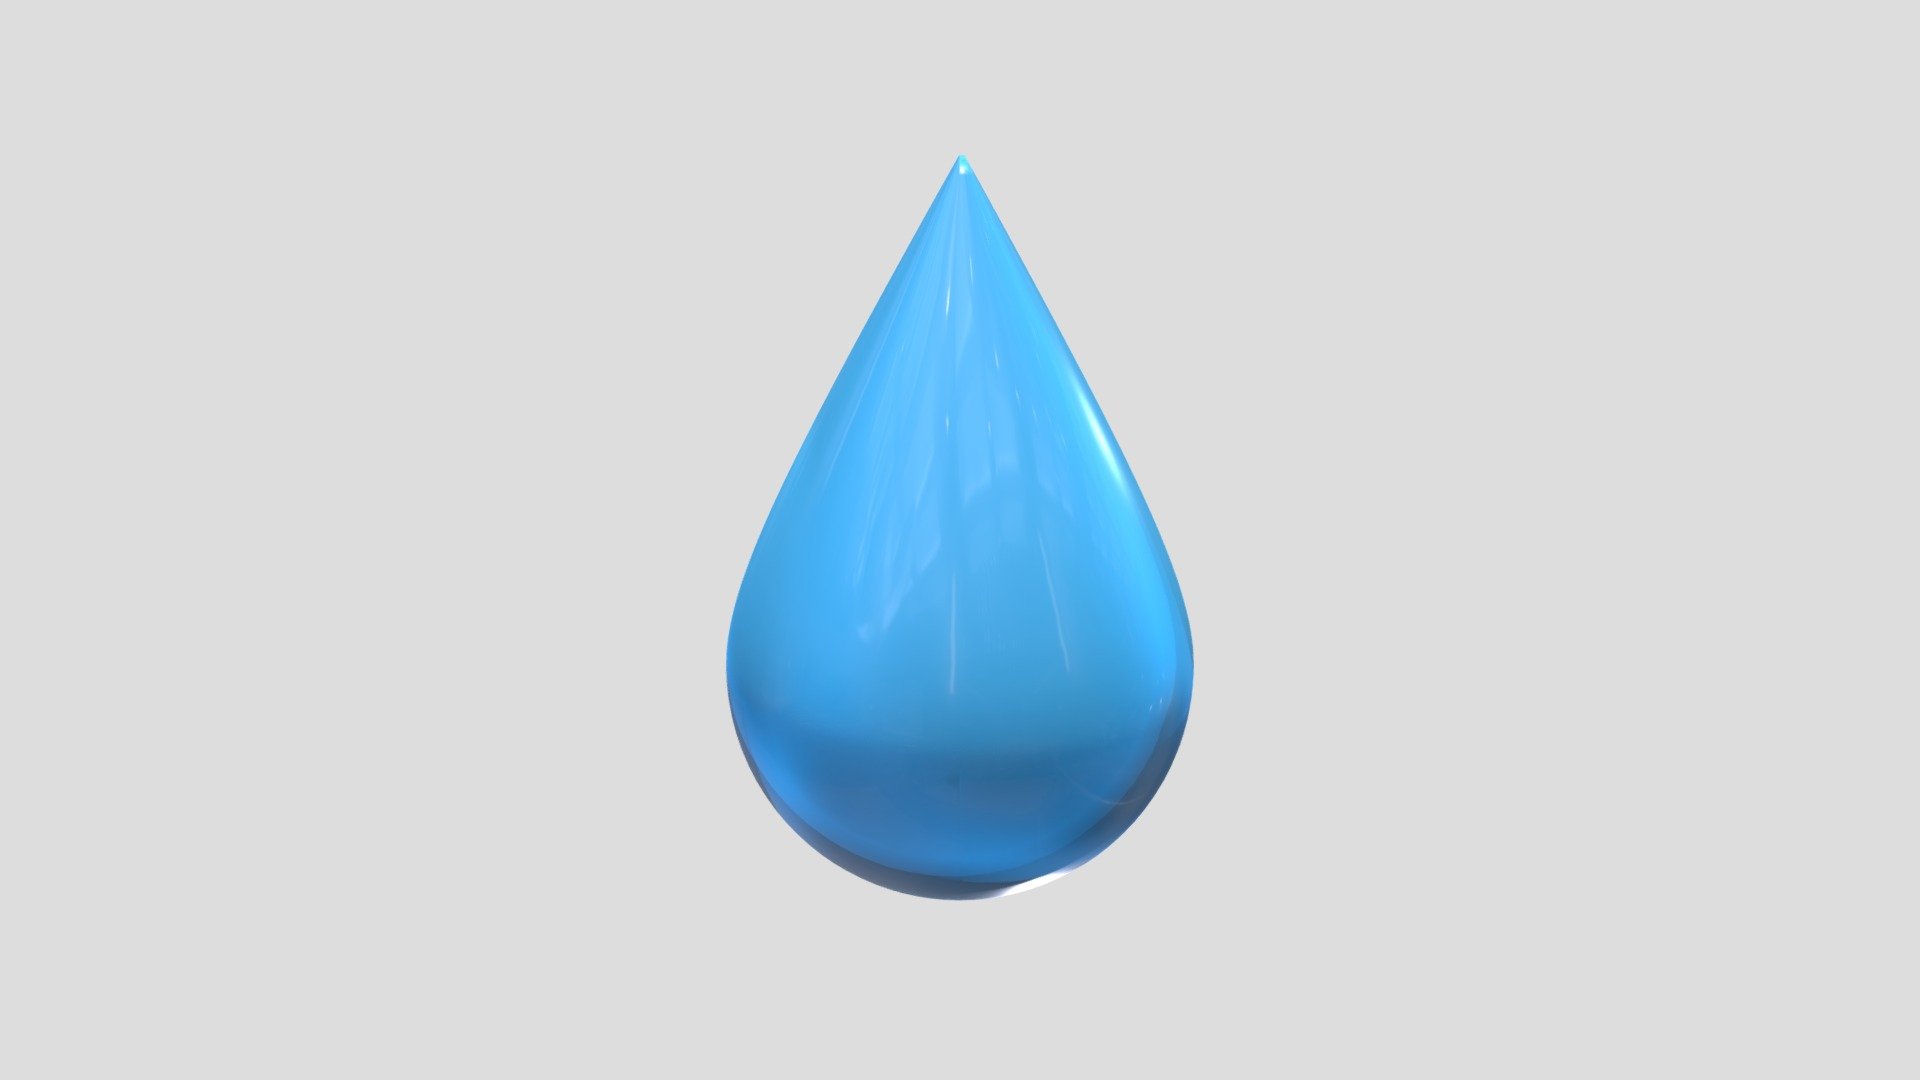 Water Drop - Water Drop - Buy Royalty Free 3D model by gurami.mamaladze 3d model